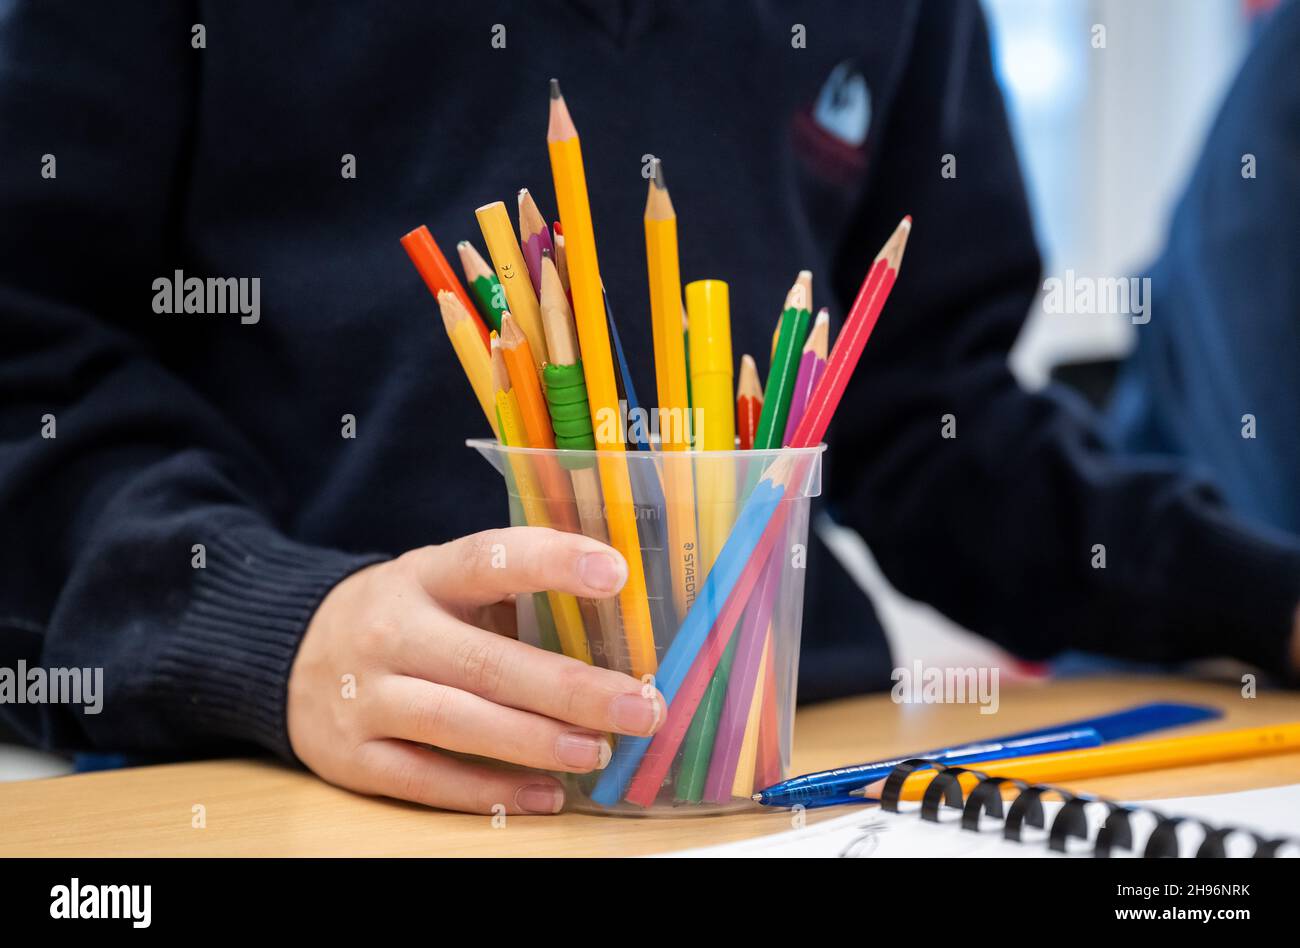 Un enfant tient un pot de crayons dans une école primaire. Banque D'Images